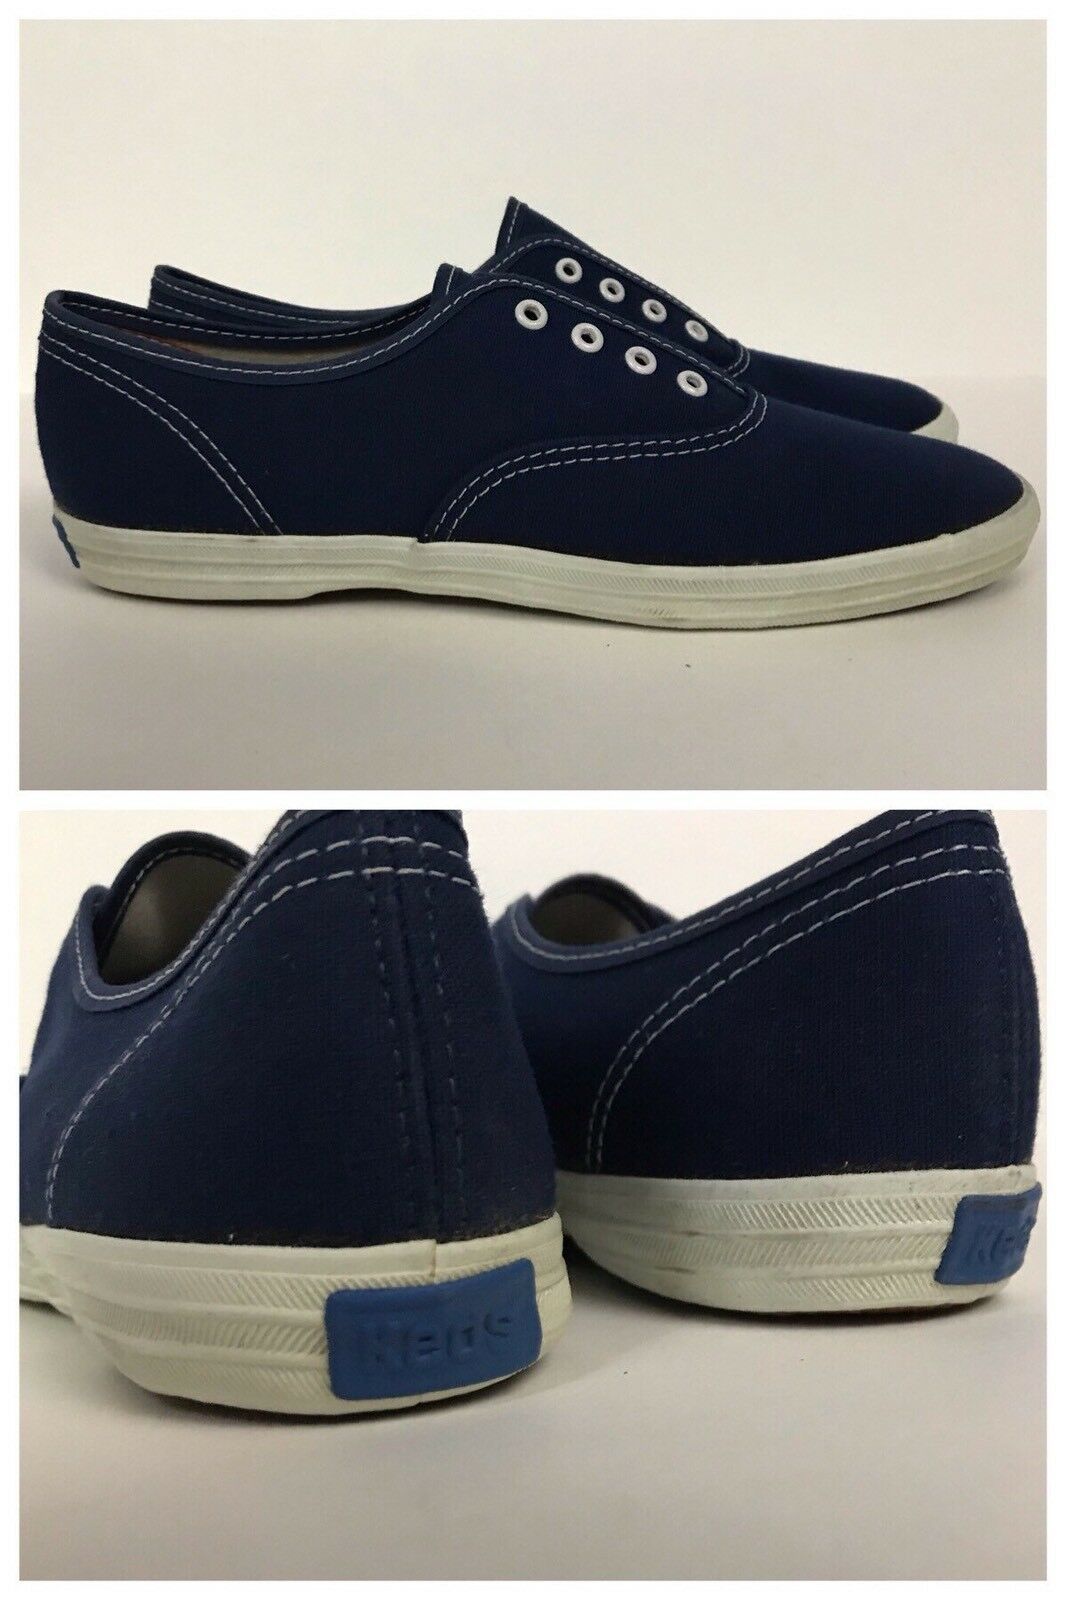 1980s Keds Shoes / Navy Blue Canvas Lace Up Tennis Shoes / Women’s 6 ...